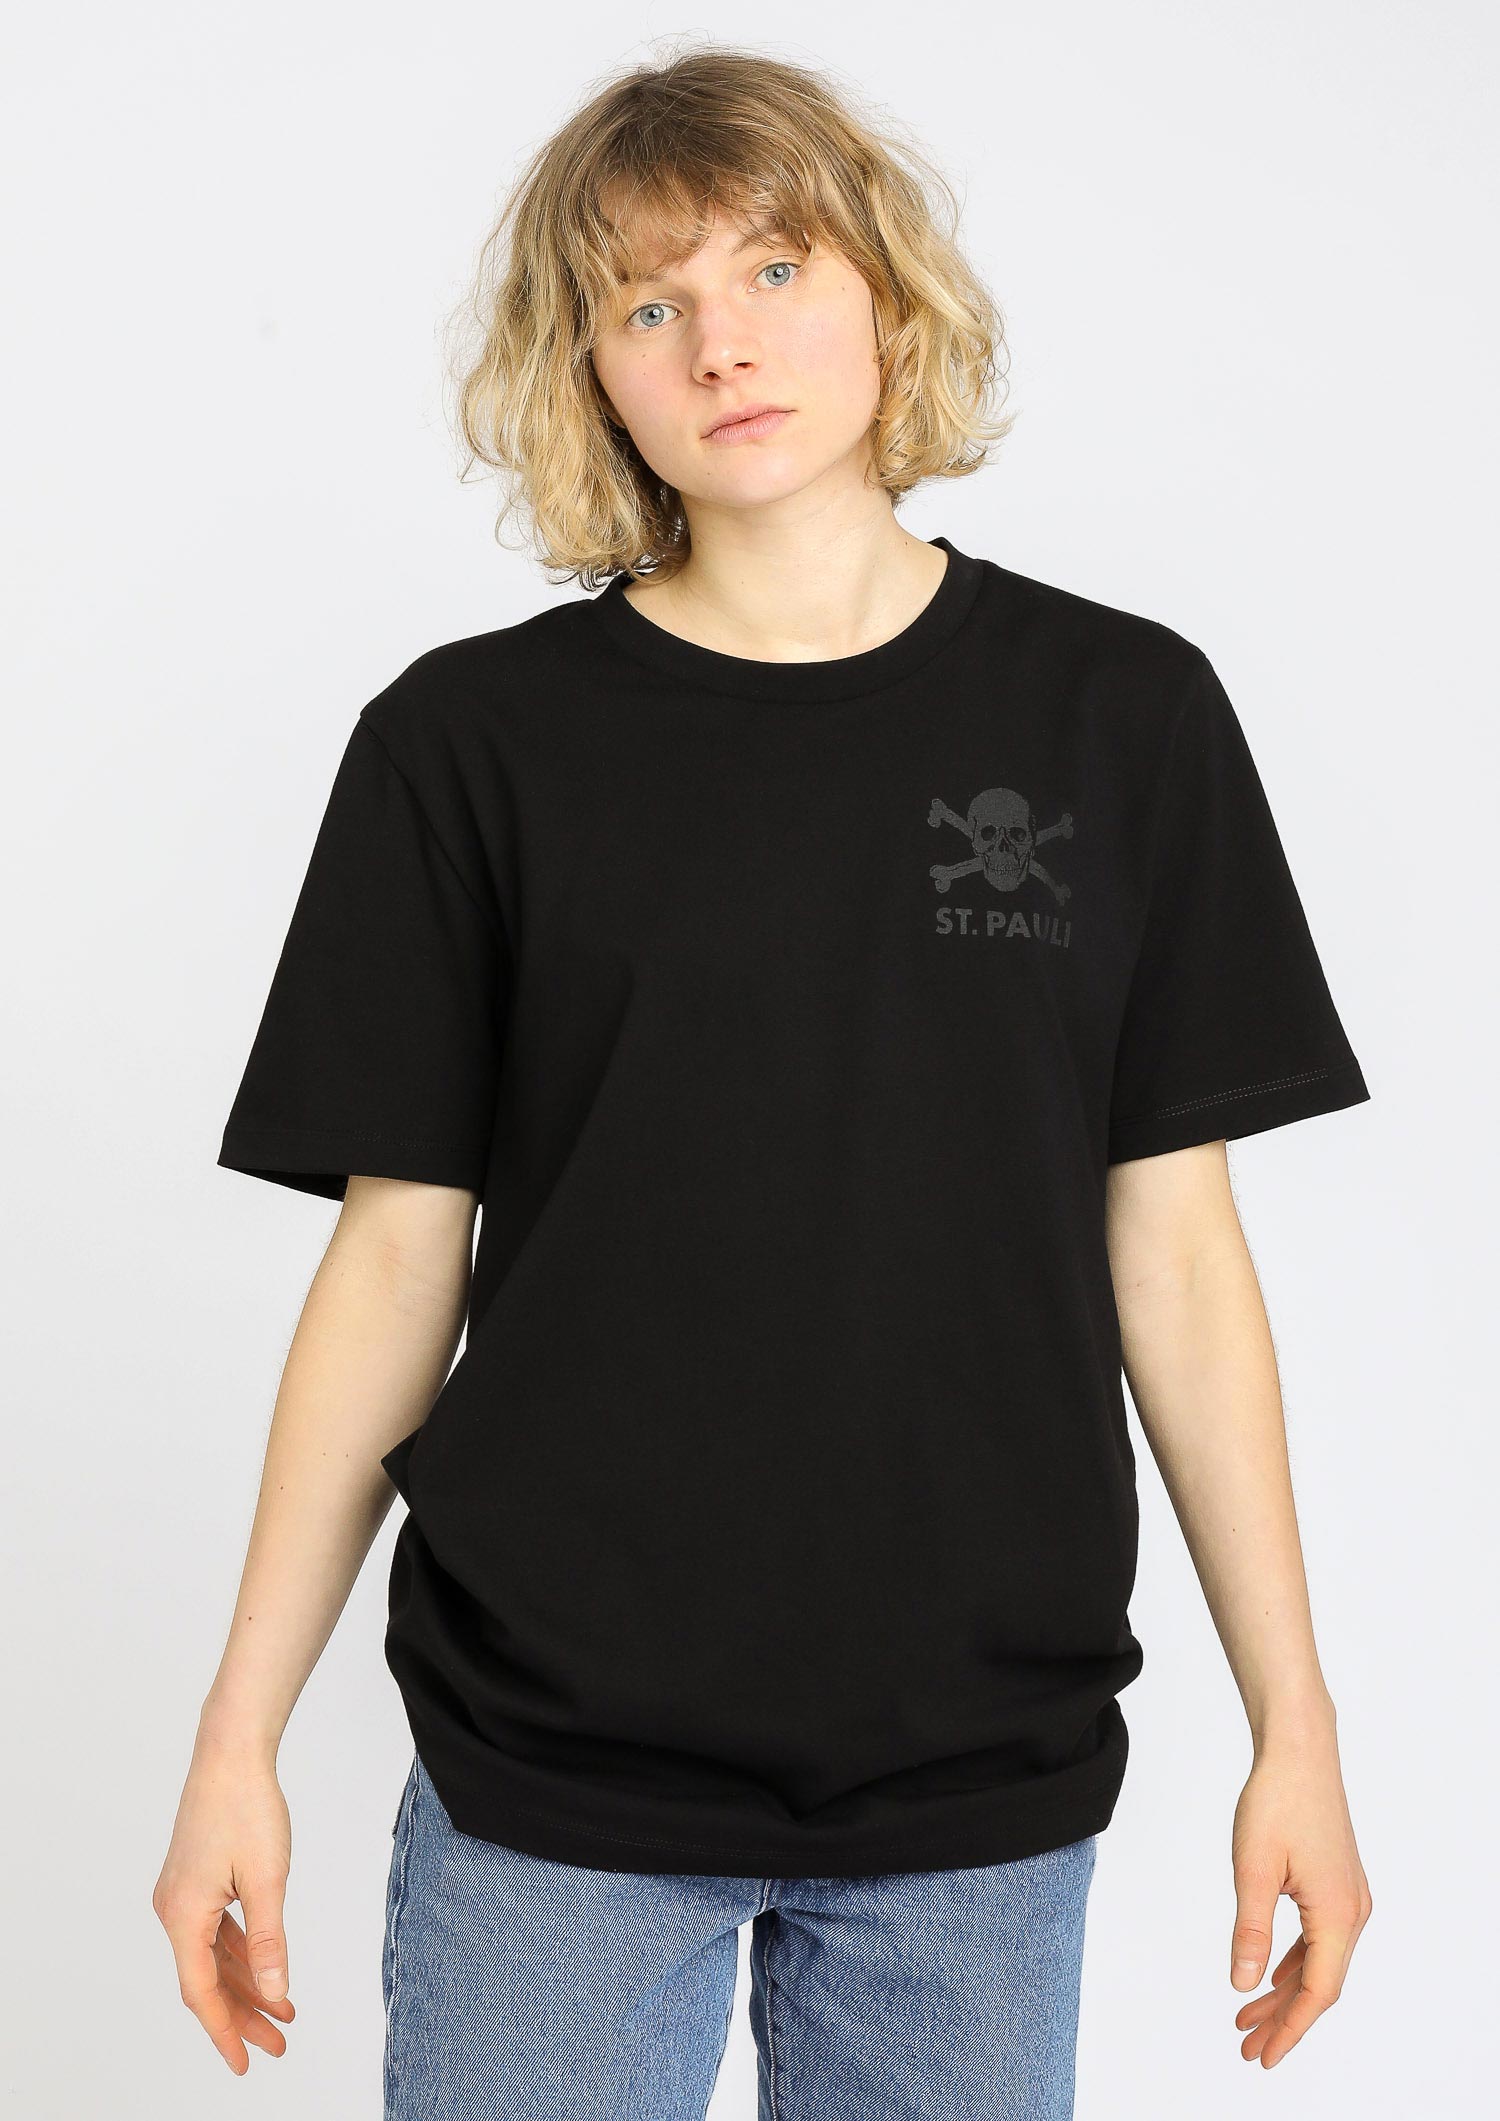 T-Shirt "All Black" Totenkopf